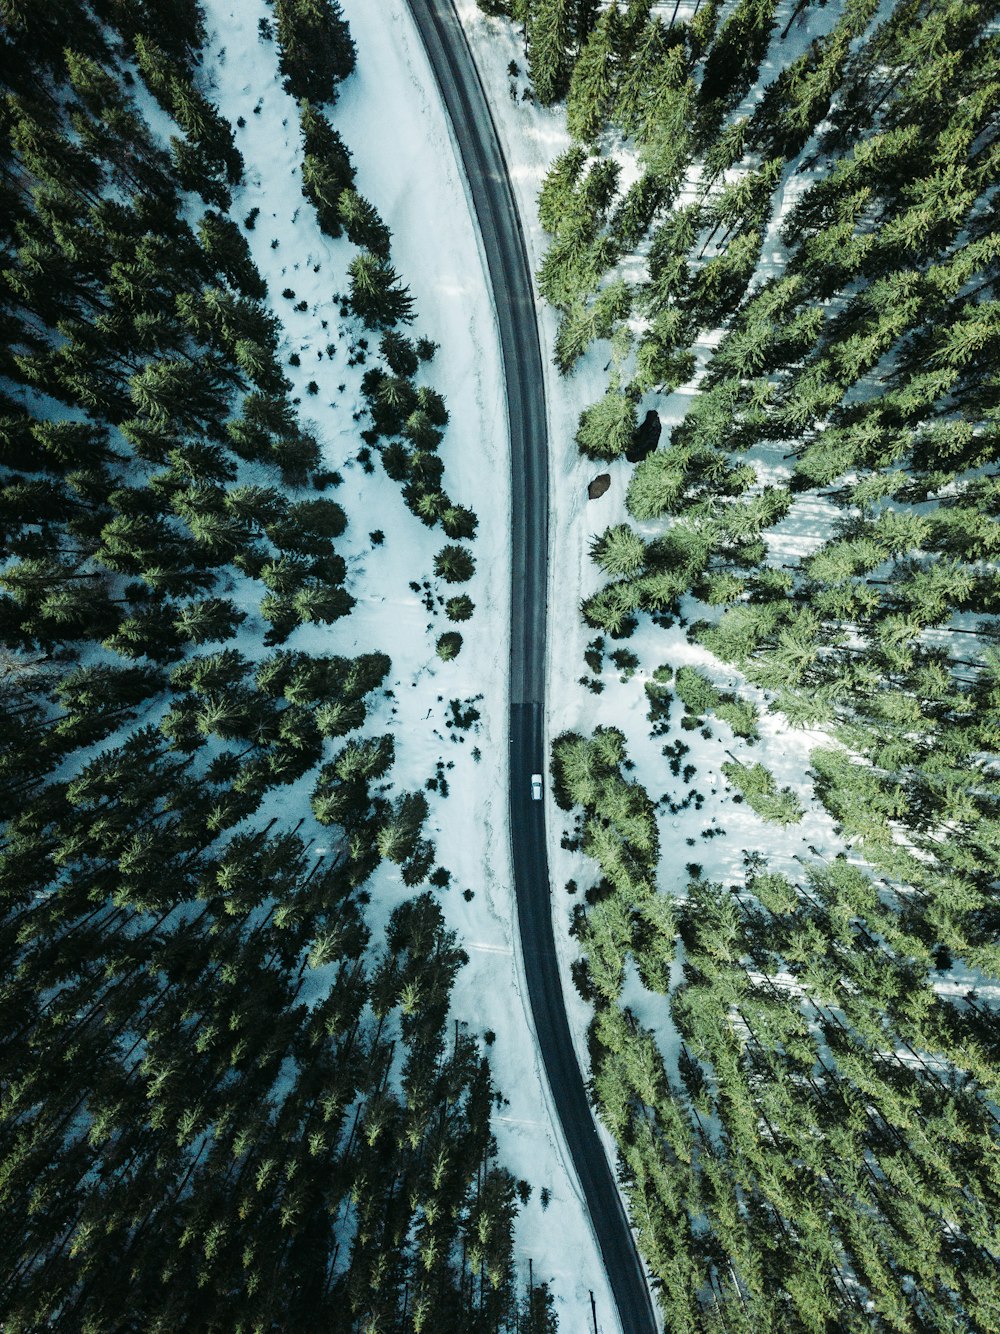 Luftbildfahrzeug auf der von Bäumen umgebenen Straße